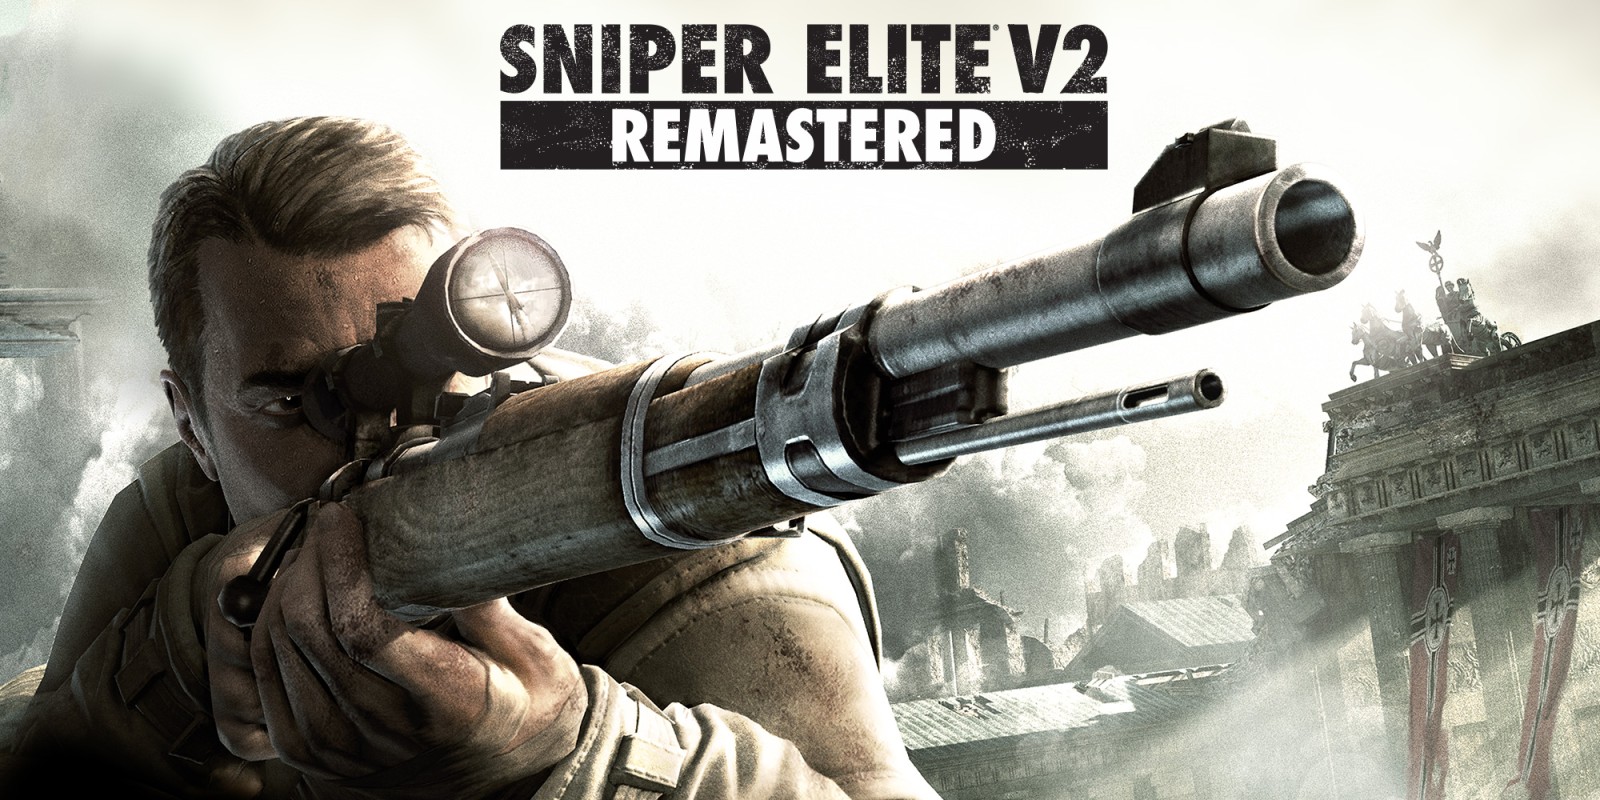 sniper elite v2 weapons unlock